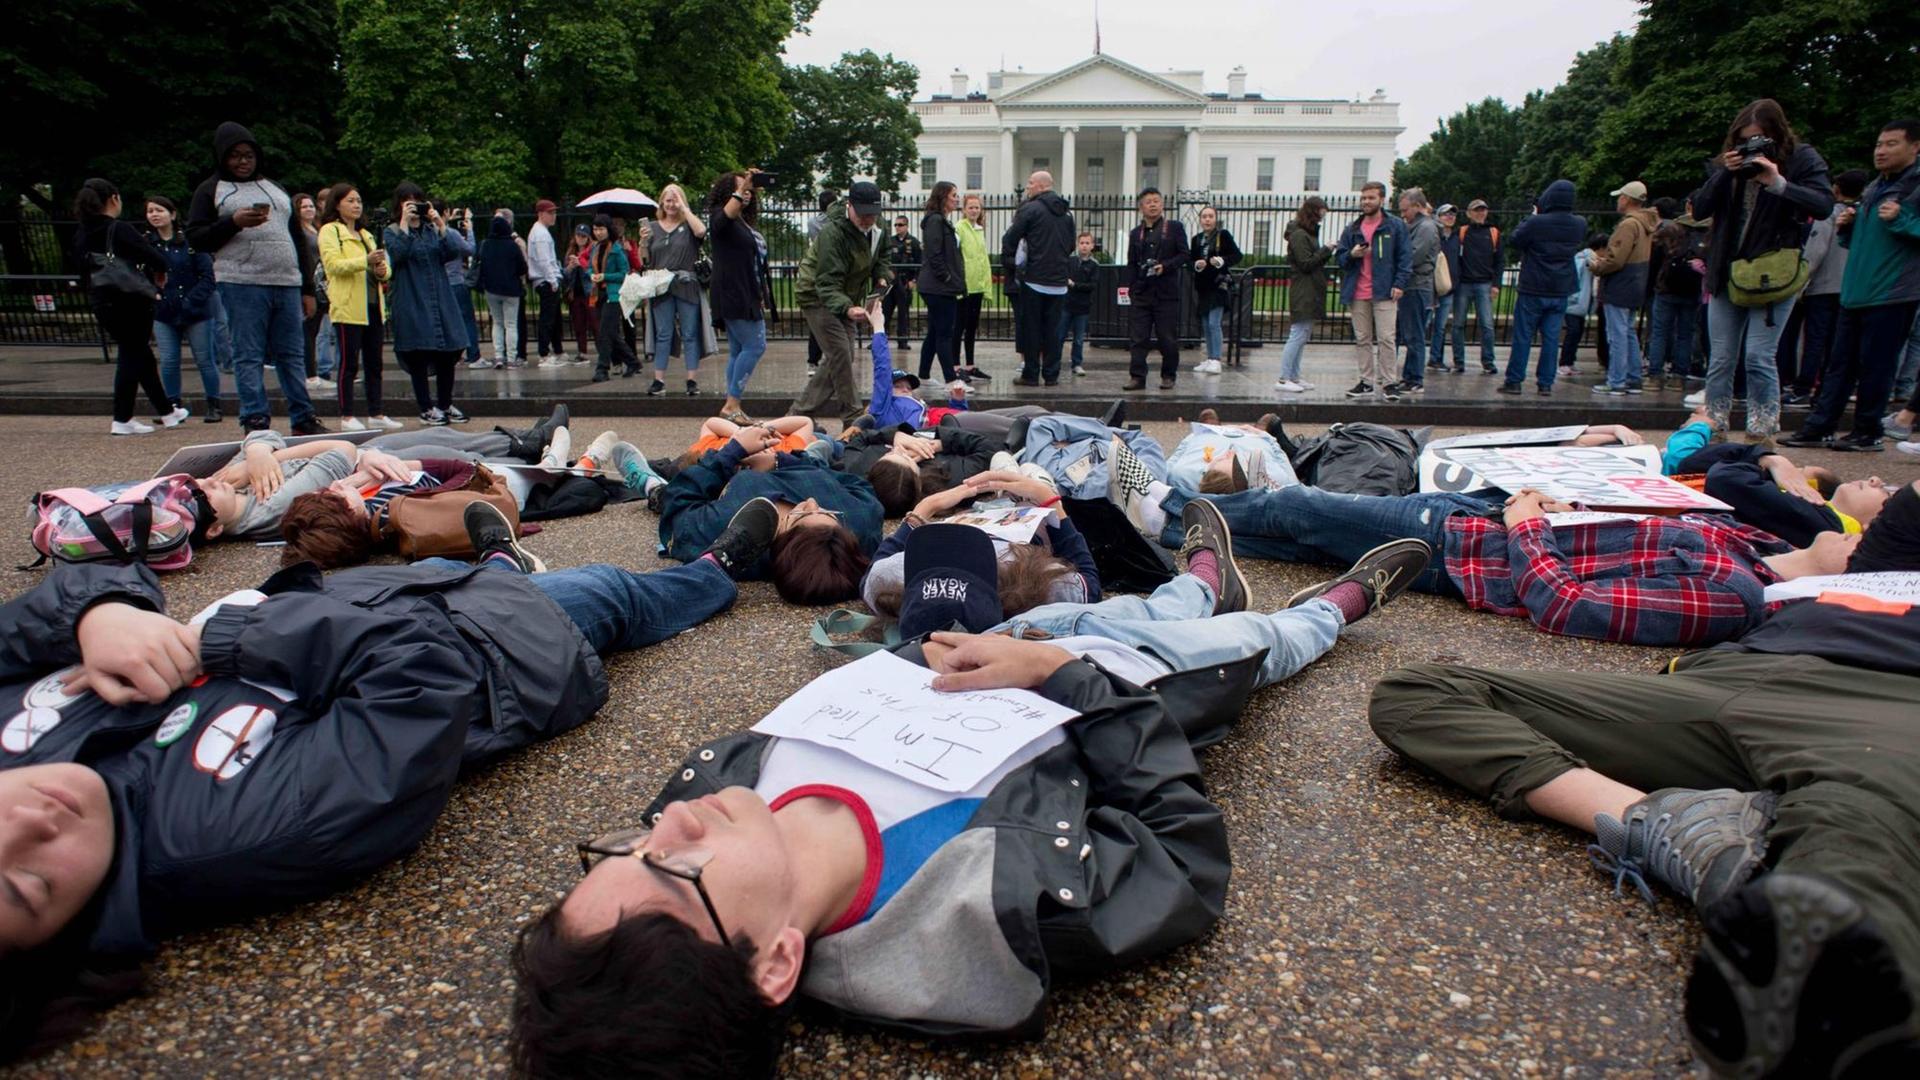 Schüler liegen im Rahmen einer Protestaktion mit Bannern in den Händen auf dem Boden, deneben stehen weitere Demonstranten.